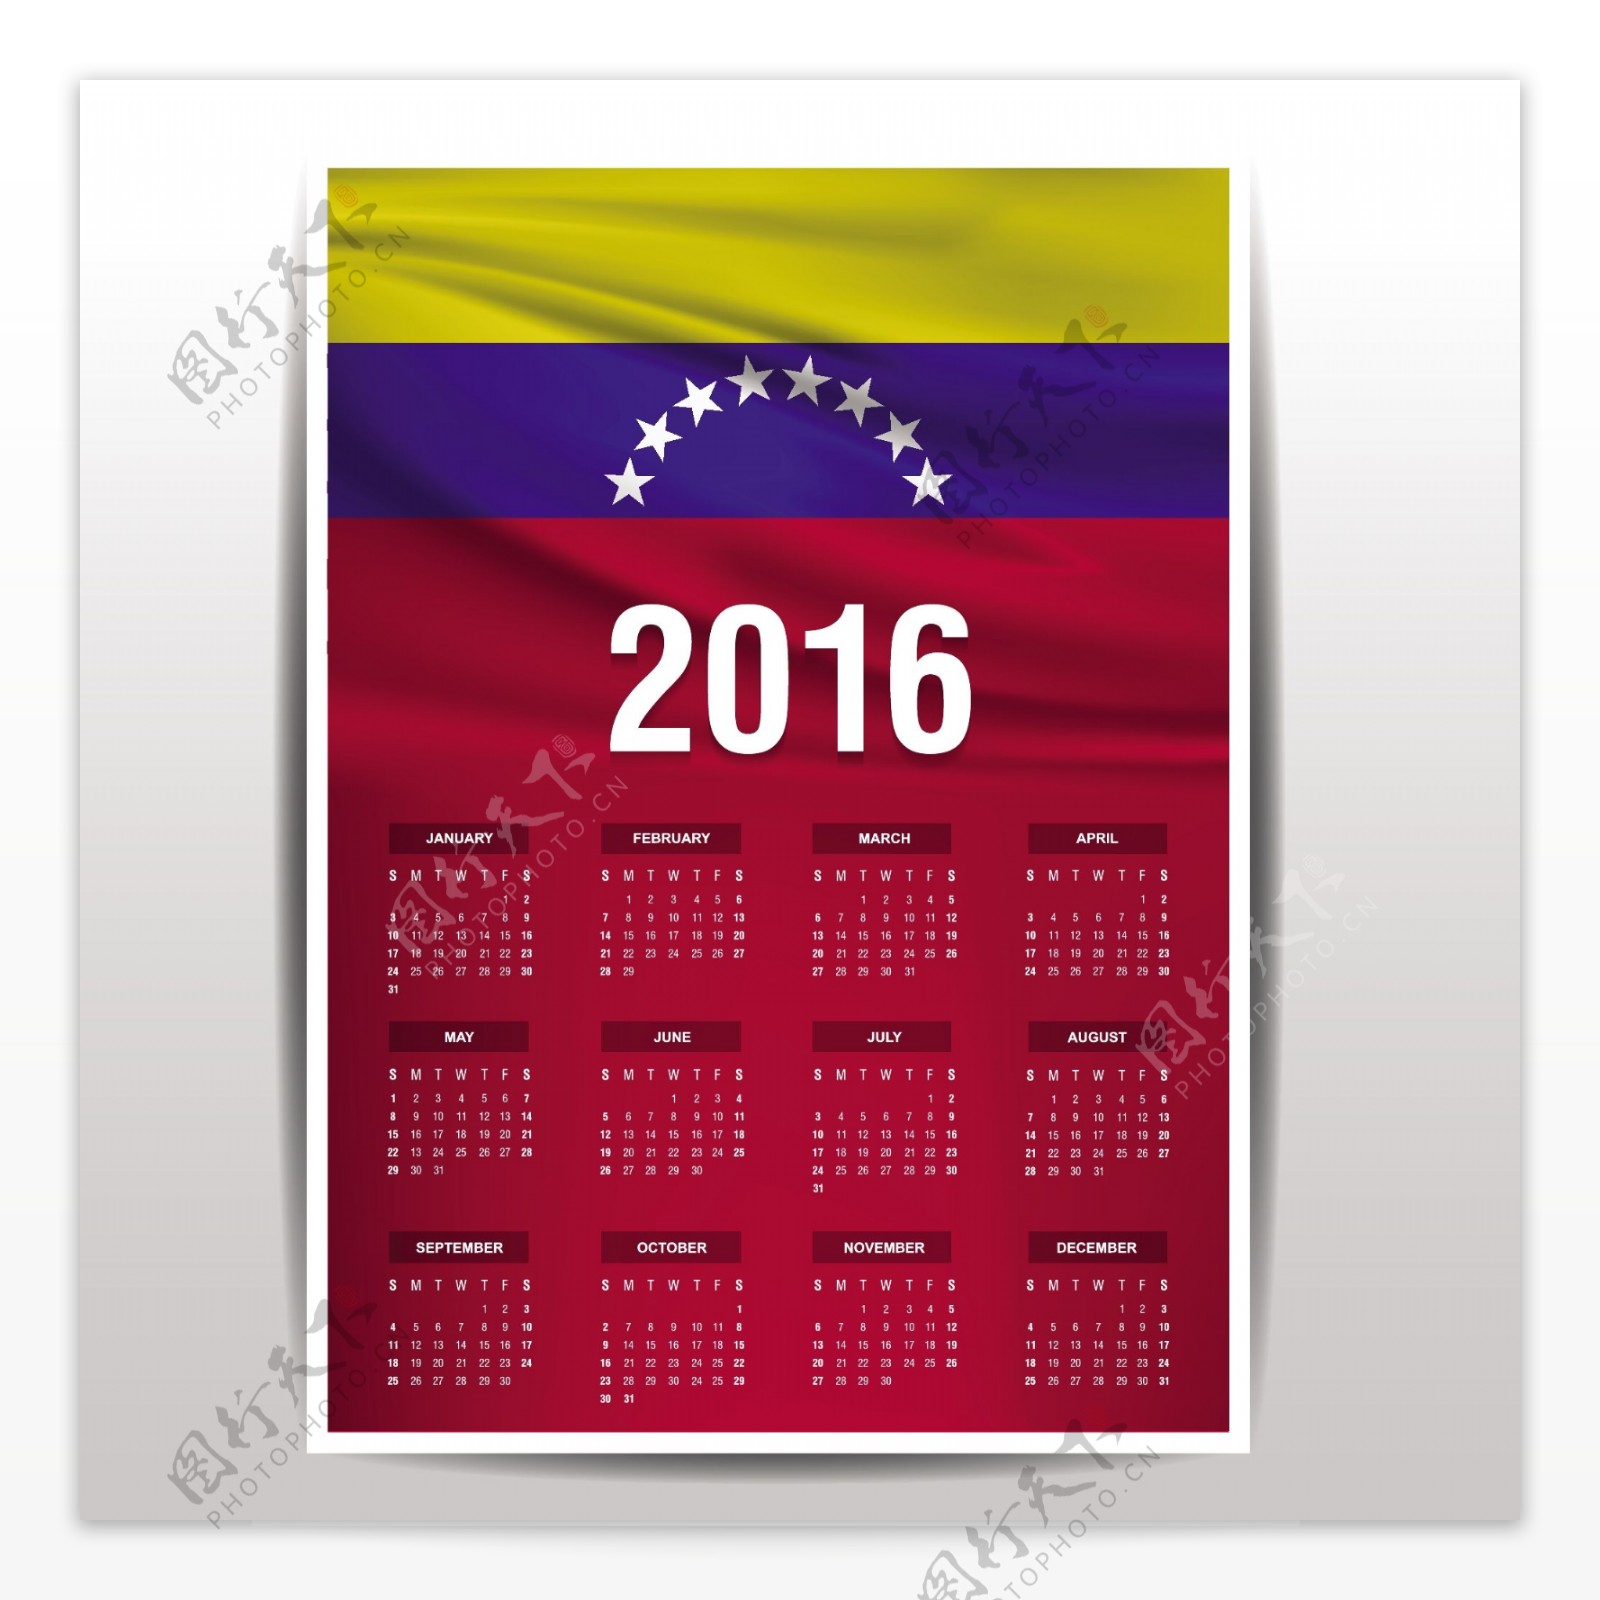 委内瑞拉日历2016